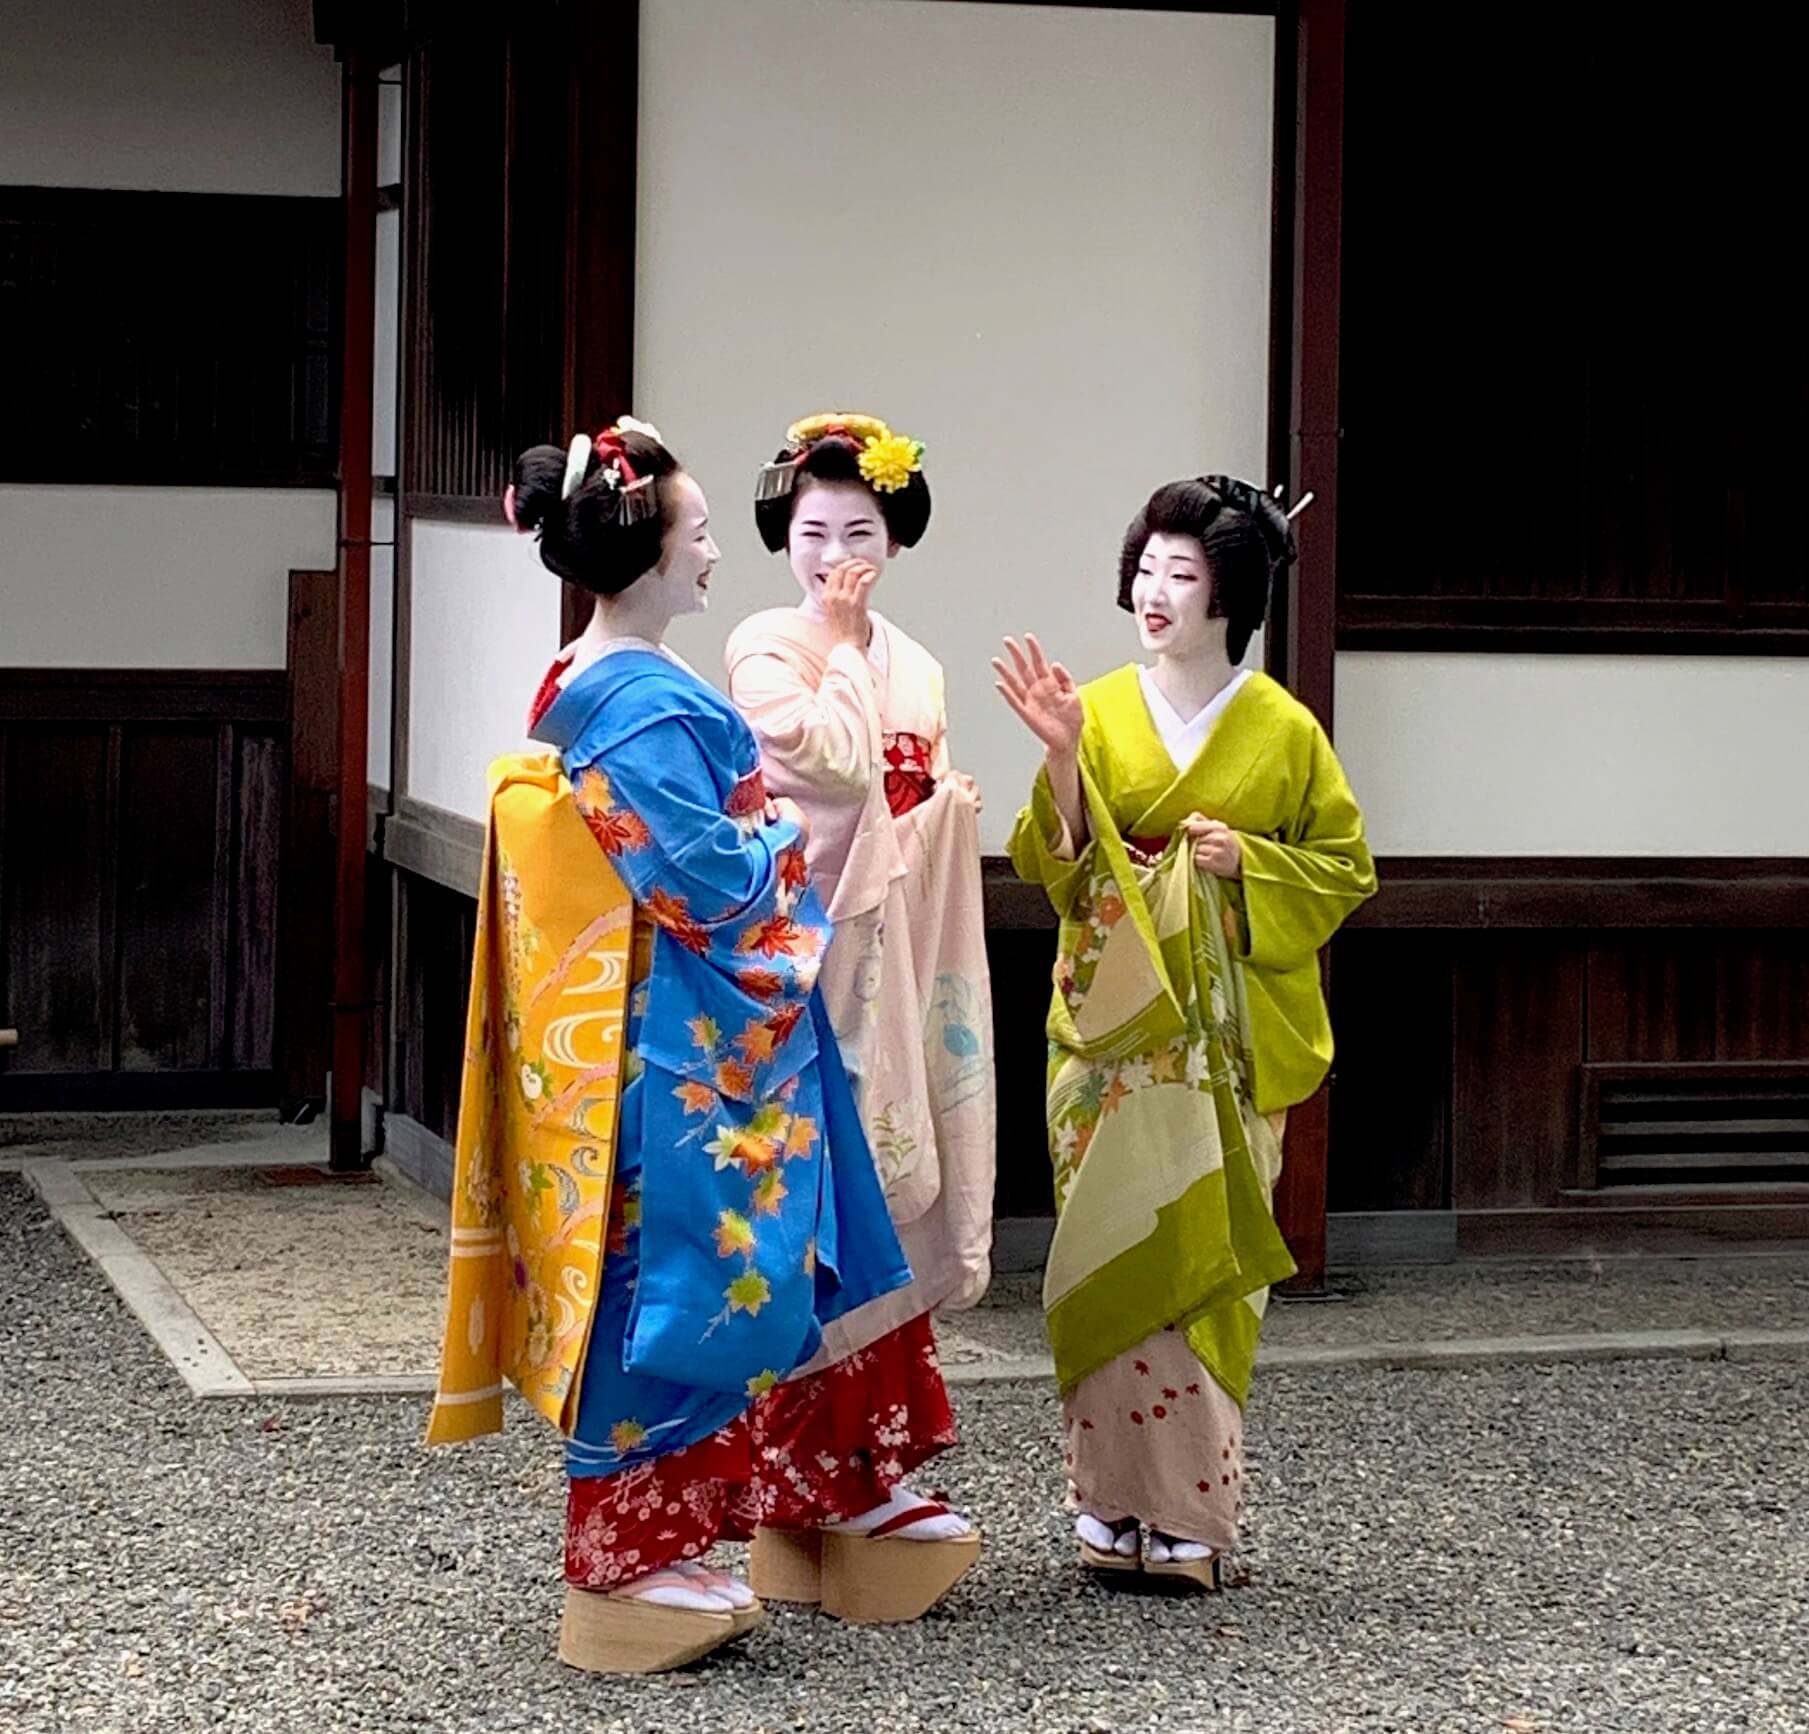 セカンドライフを愉しむ 京都 伝統の花街 舞妓さん 芸妓さんとふれ合う作法 ウチコミ タイムズ 仲介手数料無料ウチコミ